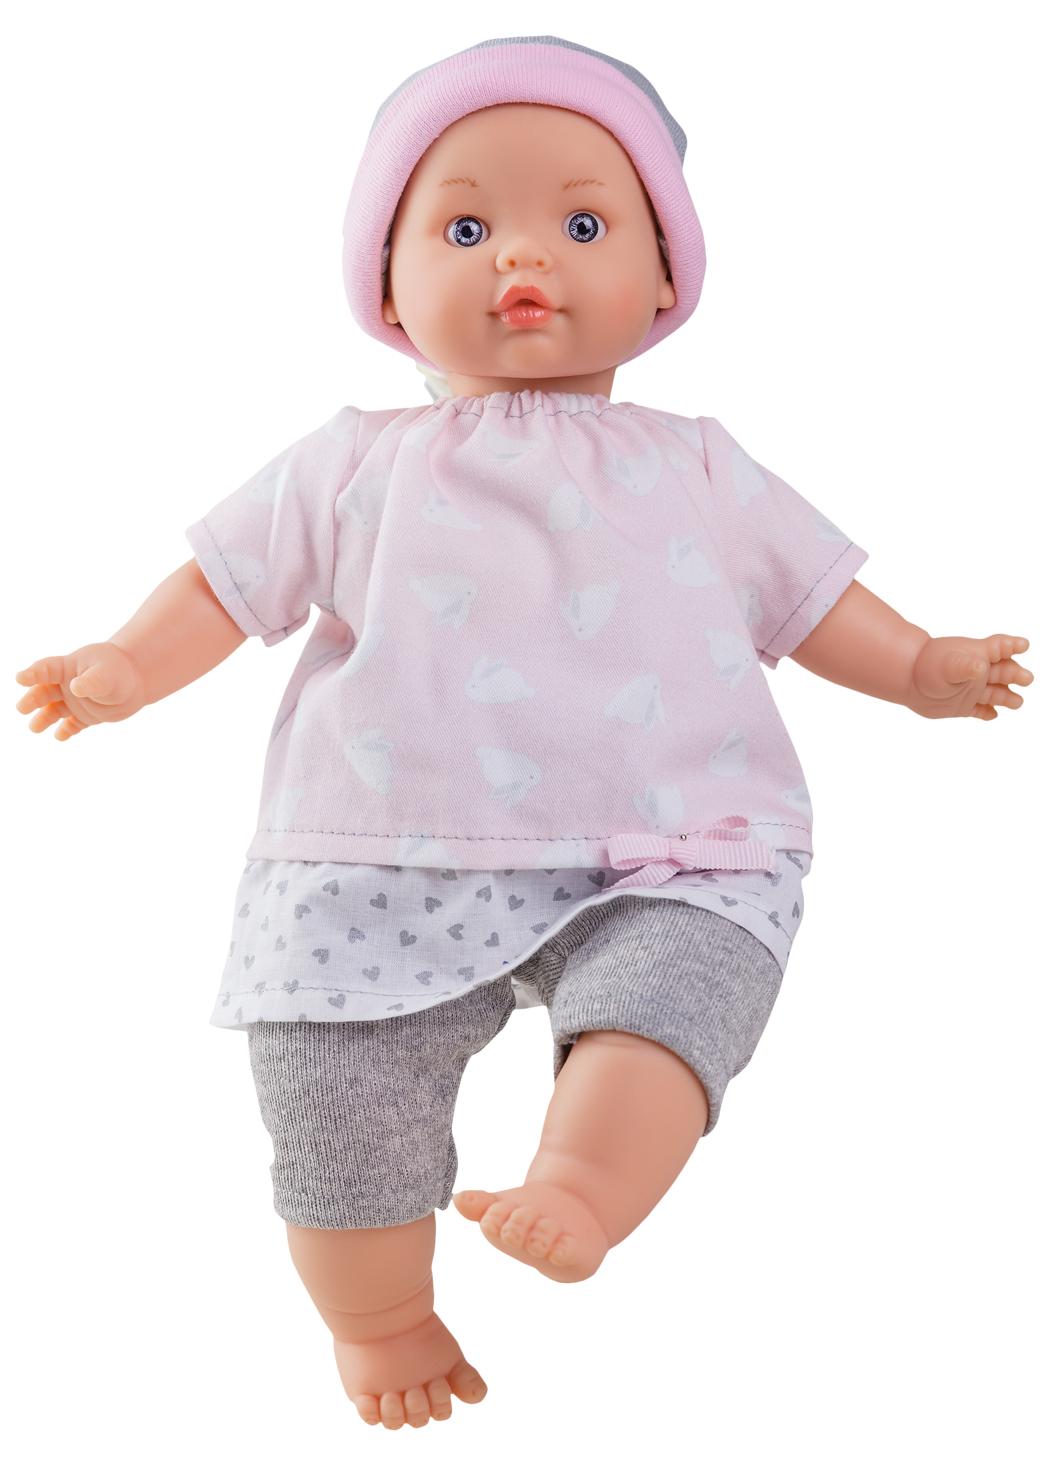 Realistické miminko - holčička Adriana od firmy Paola Reina